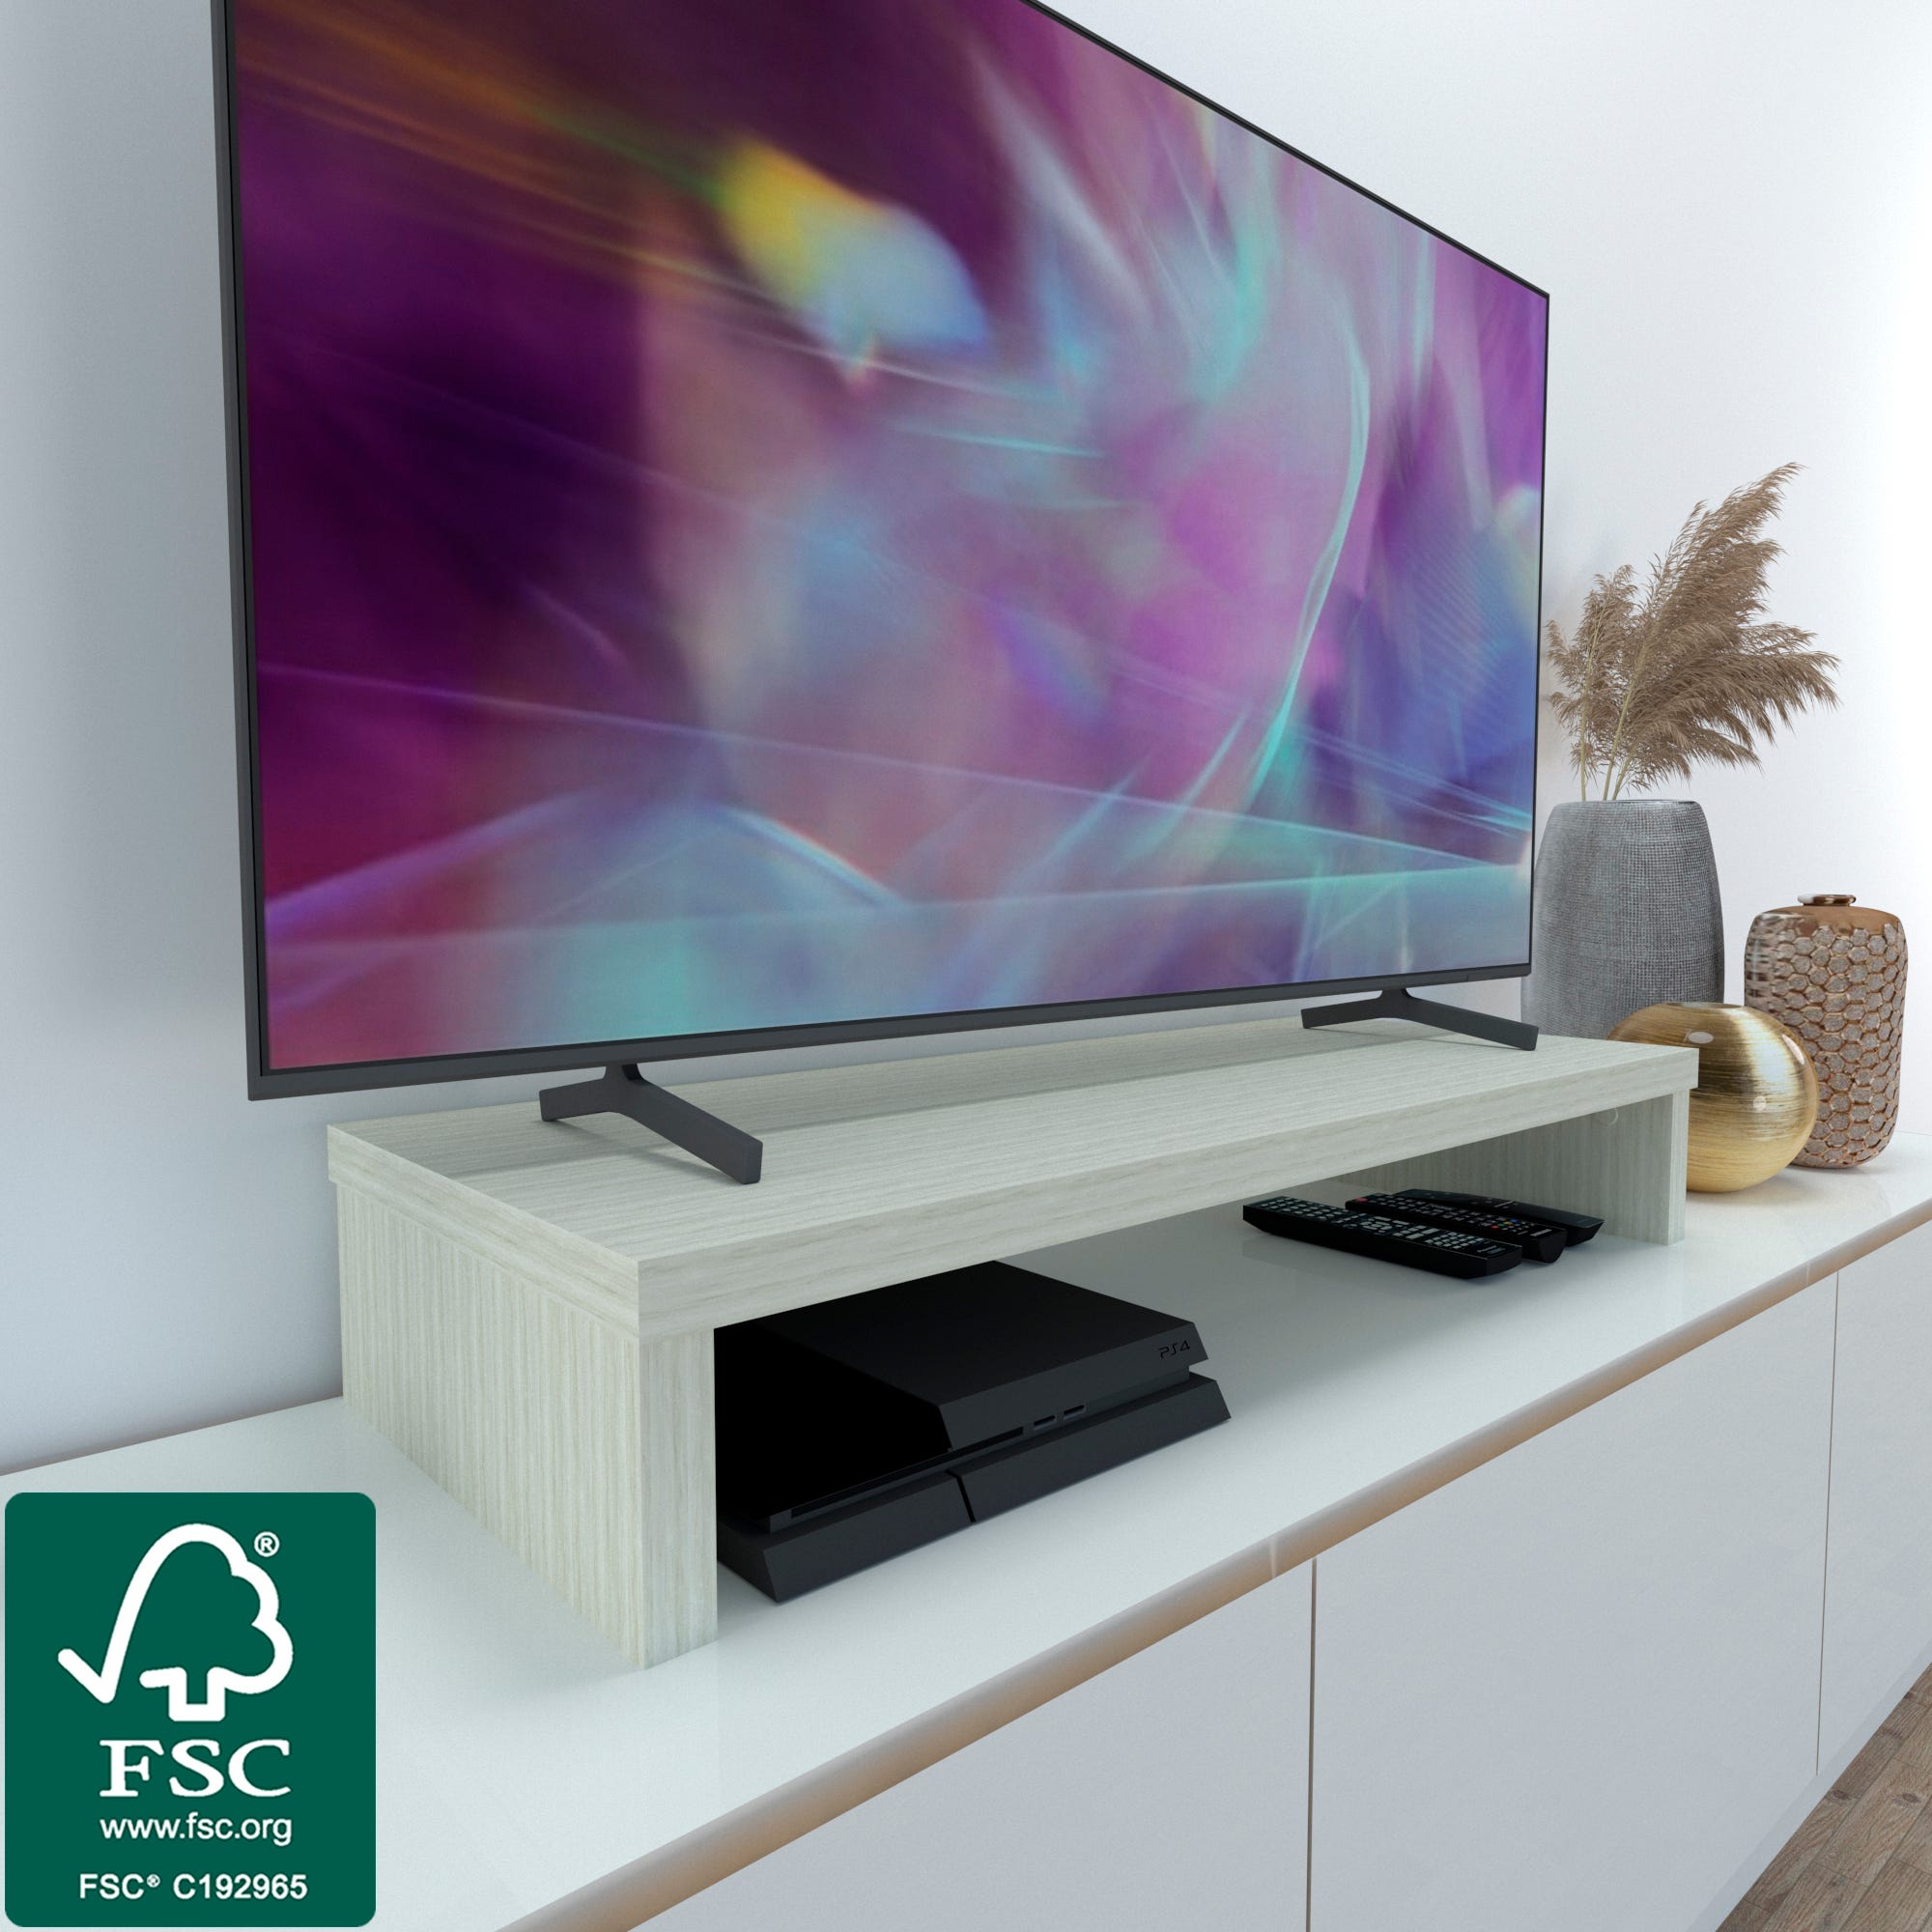 Henor Elevador TV de Madera FSC® 110 x 35 x 15 cm Soporta 60 Kg